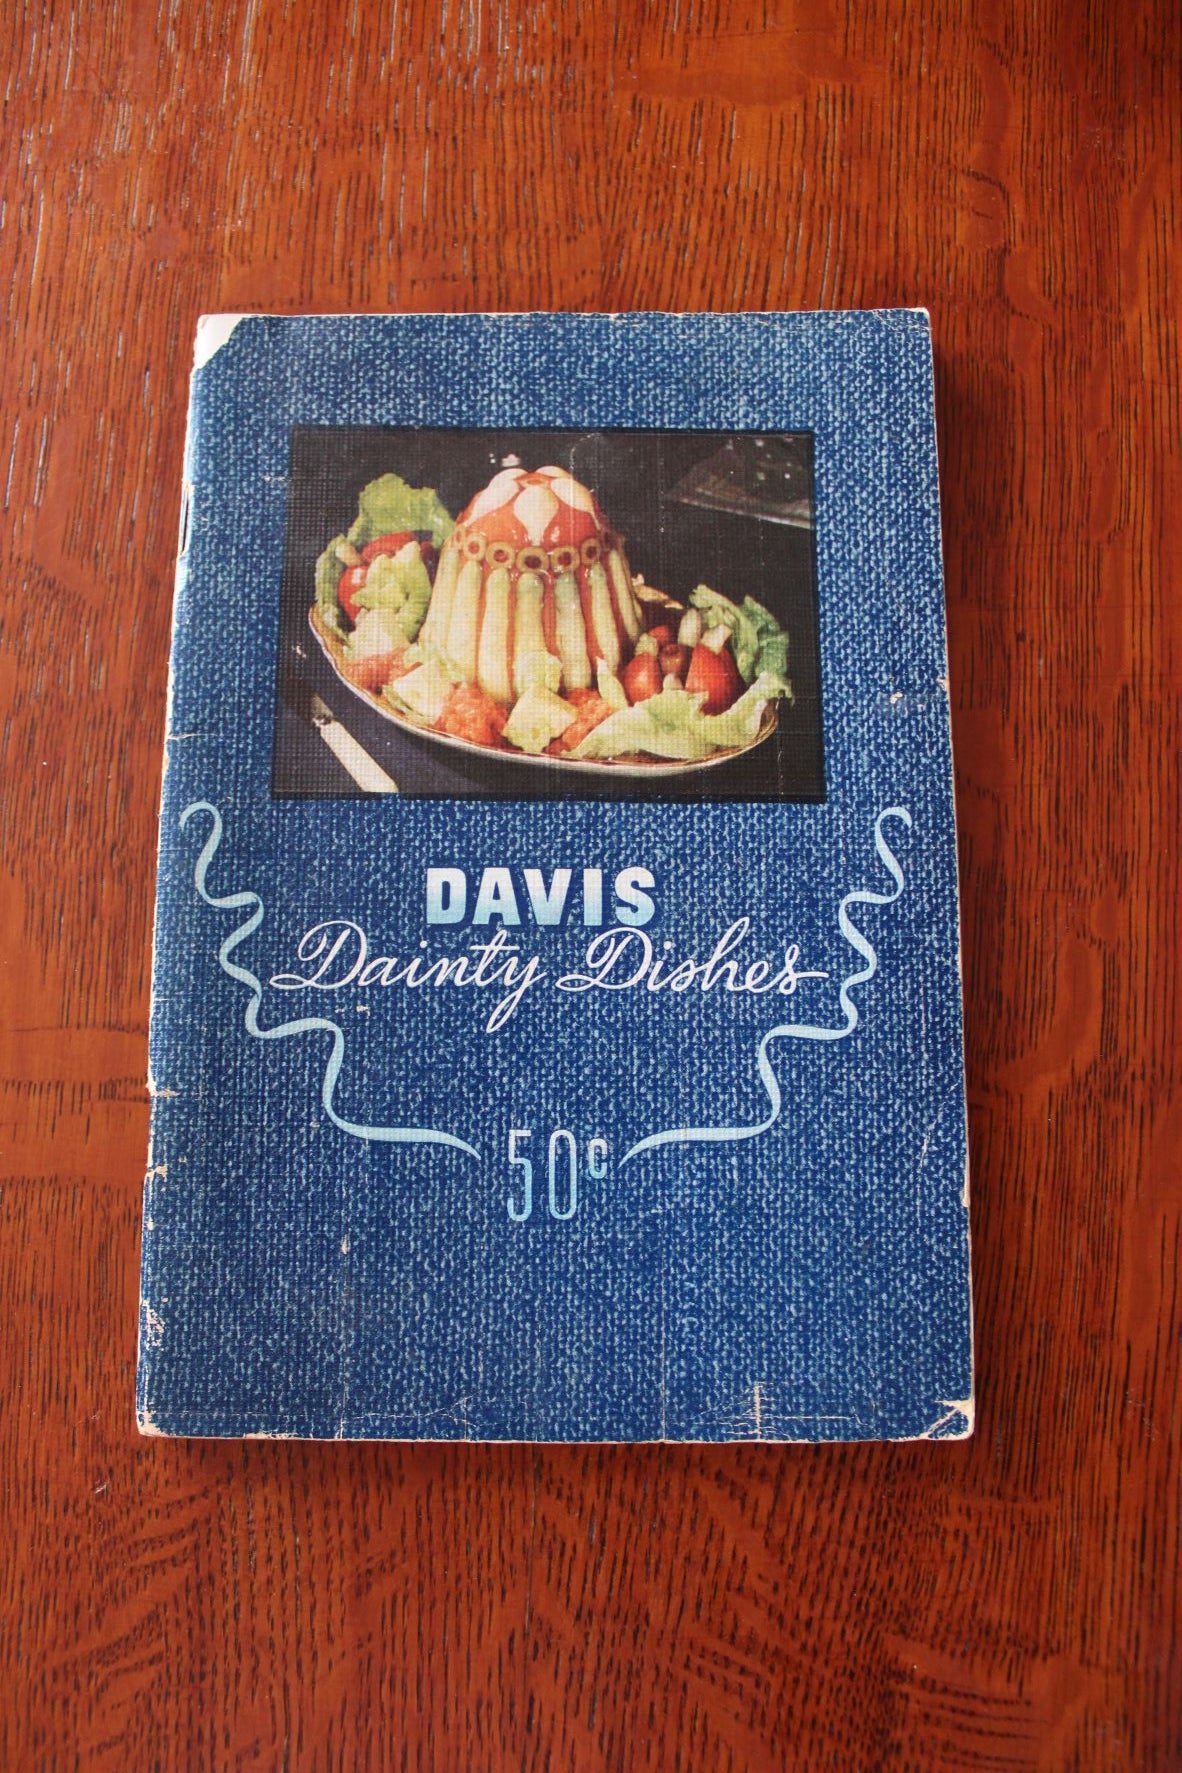 Davis Dainty Dishes. The Davis Gelatine Organization. 1946